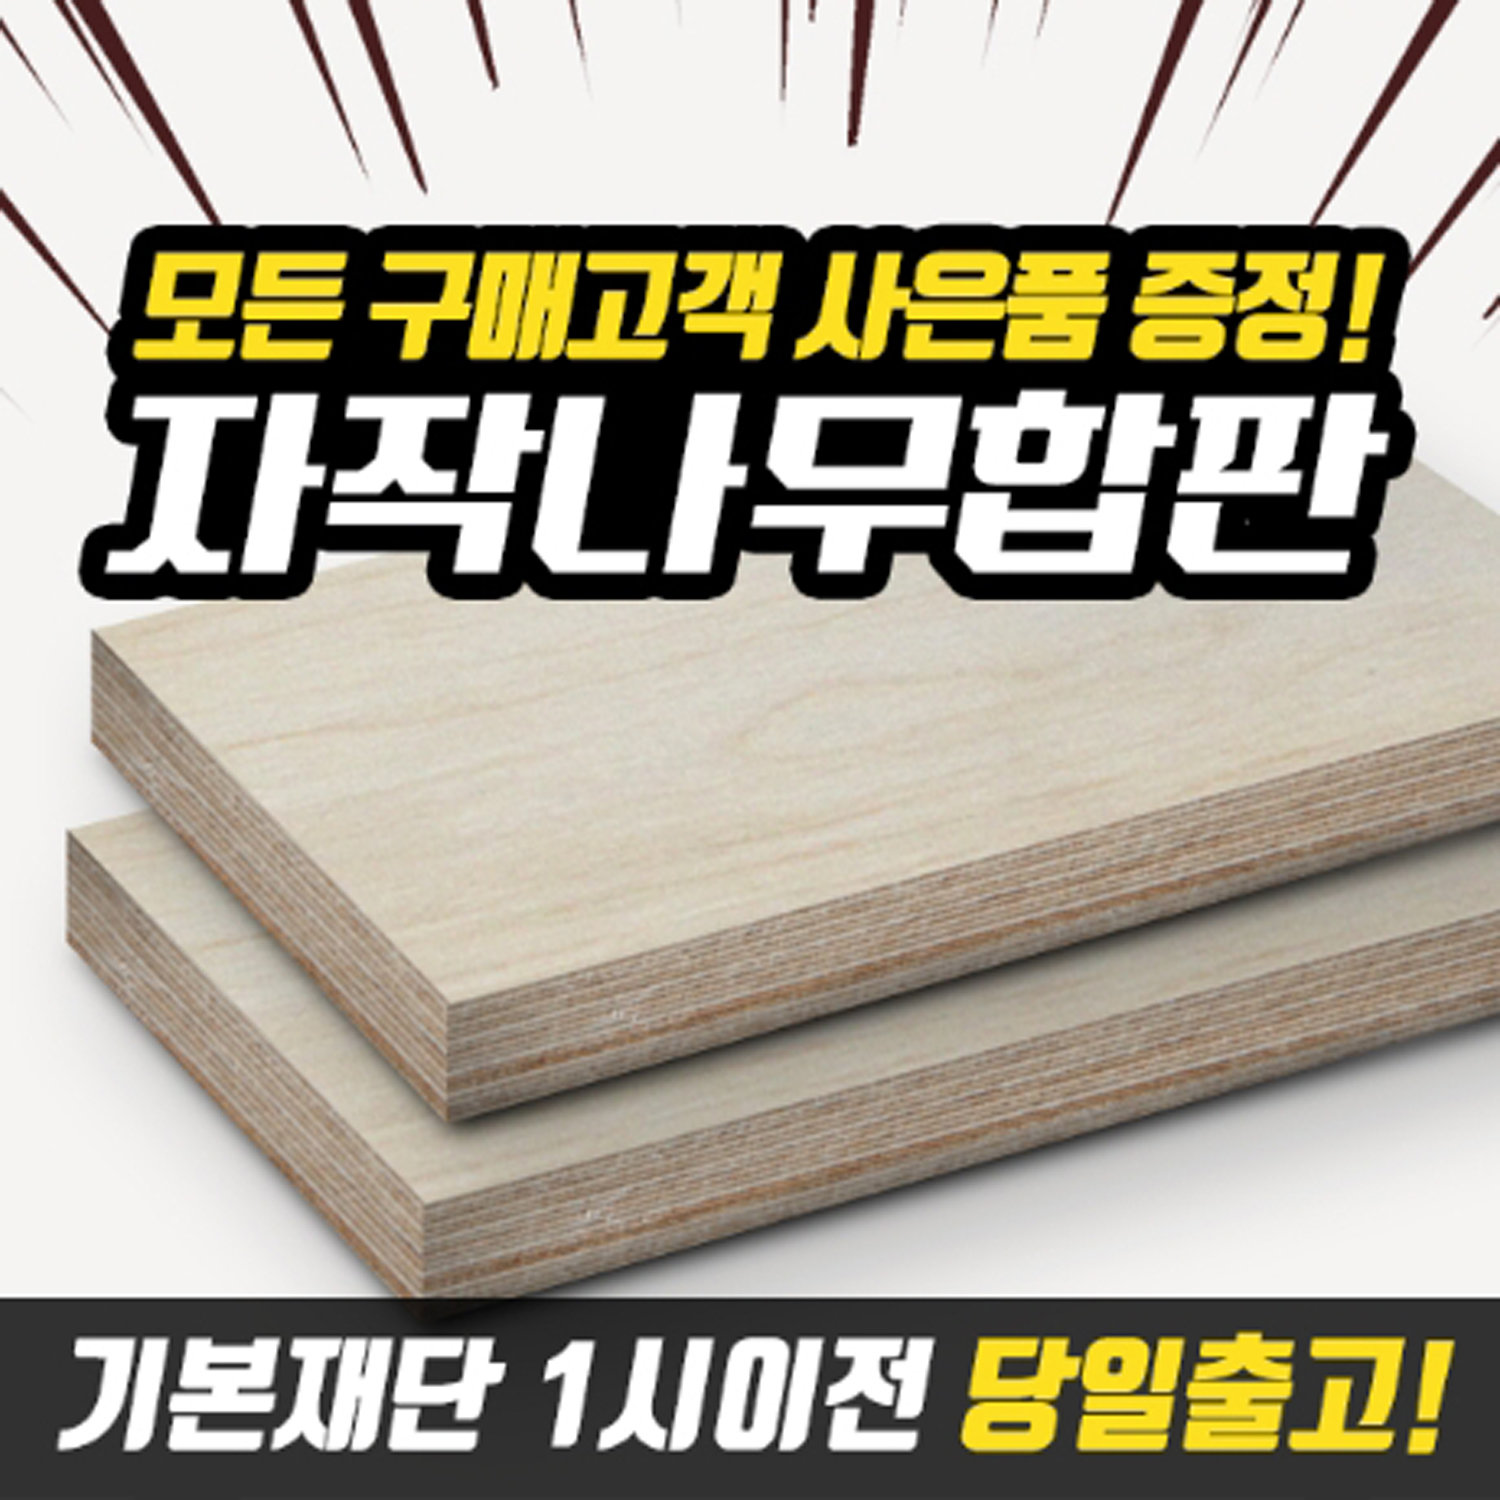 페인트인포]자작나무합판 Diy목재재단 나무재단 원목재단 셀프인테리어 가구제작 : 롯데On